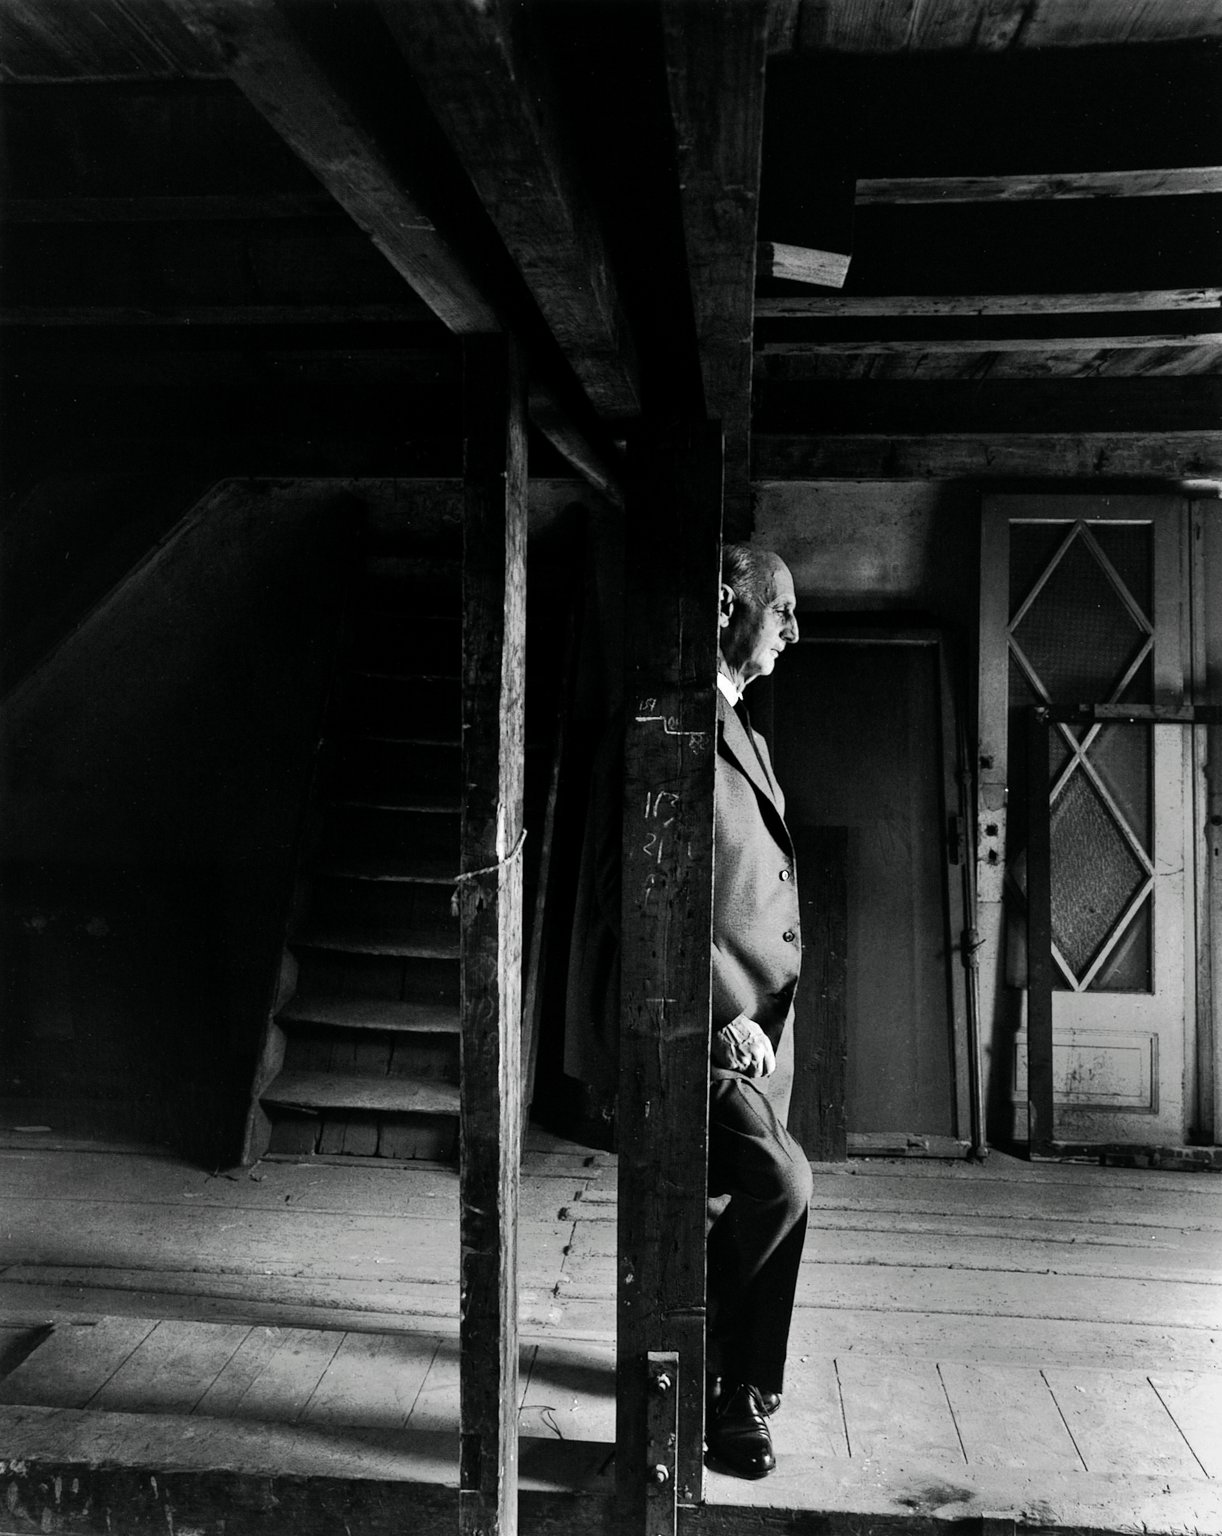 奥托·弗兰克于 1960 年 5 月 3 日“安妮之家”正式开馆前几个小时在“密室”的阁楼上。